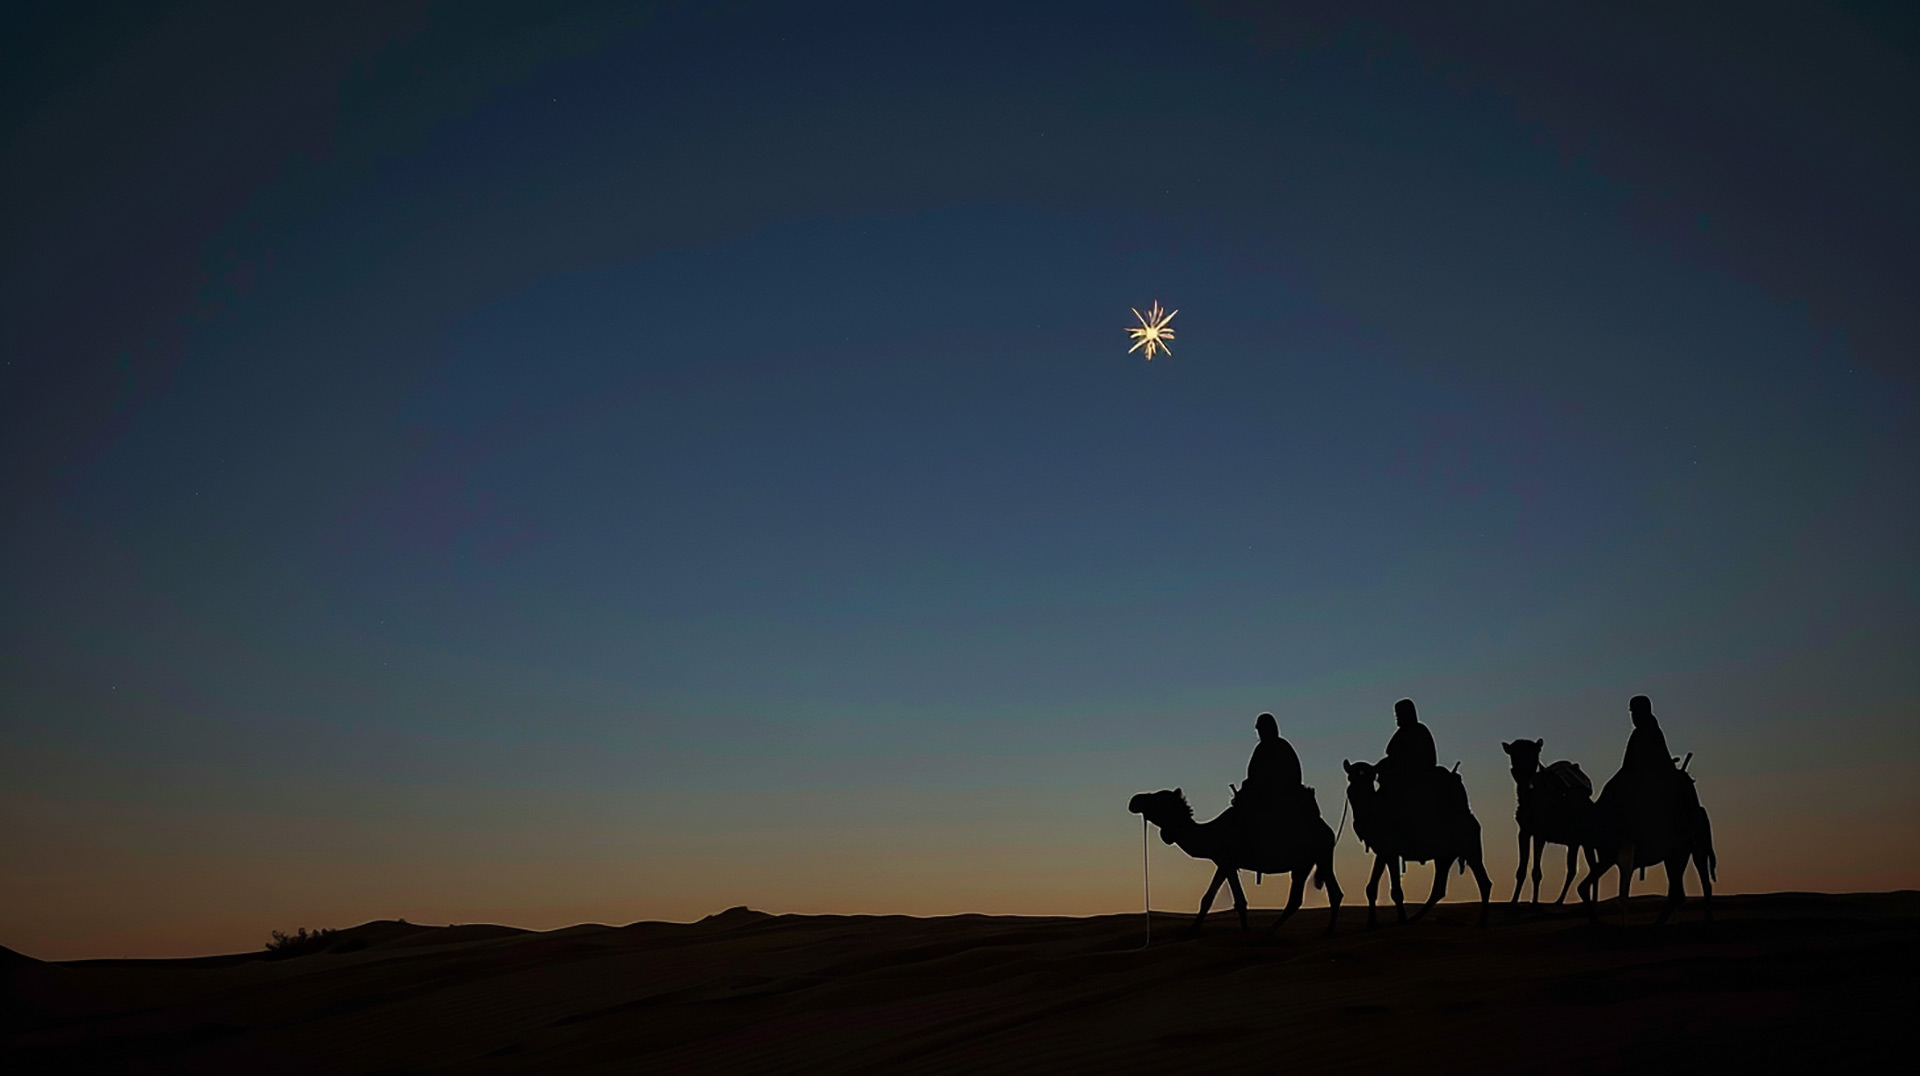 Eternal Light: Radiant Religious Christmas Image